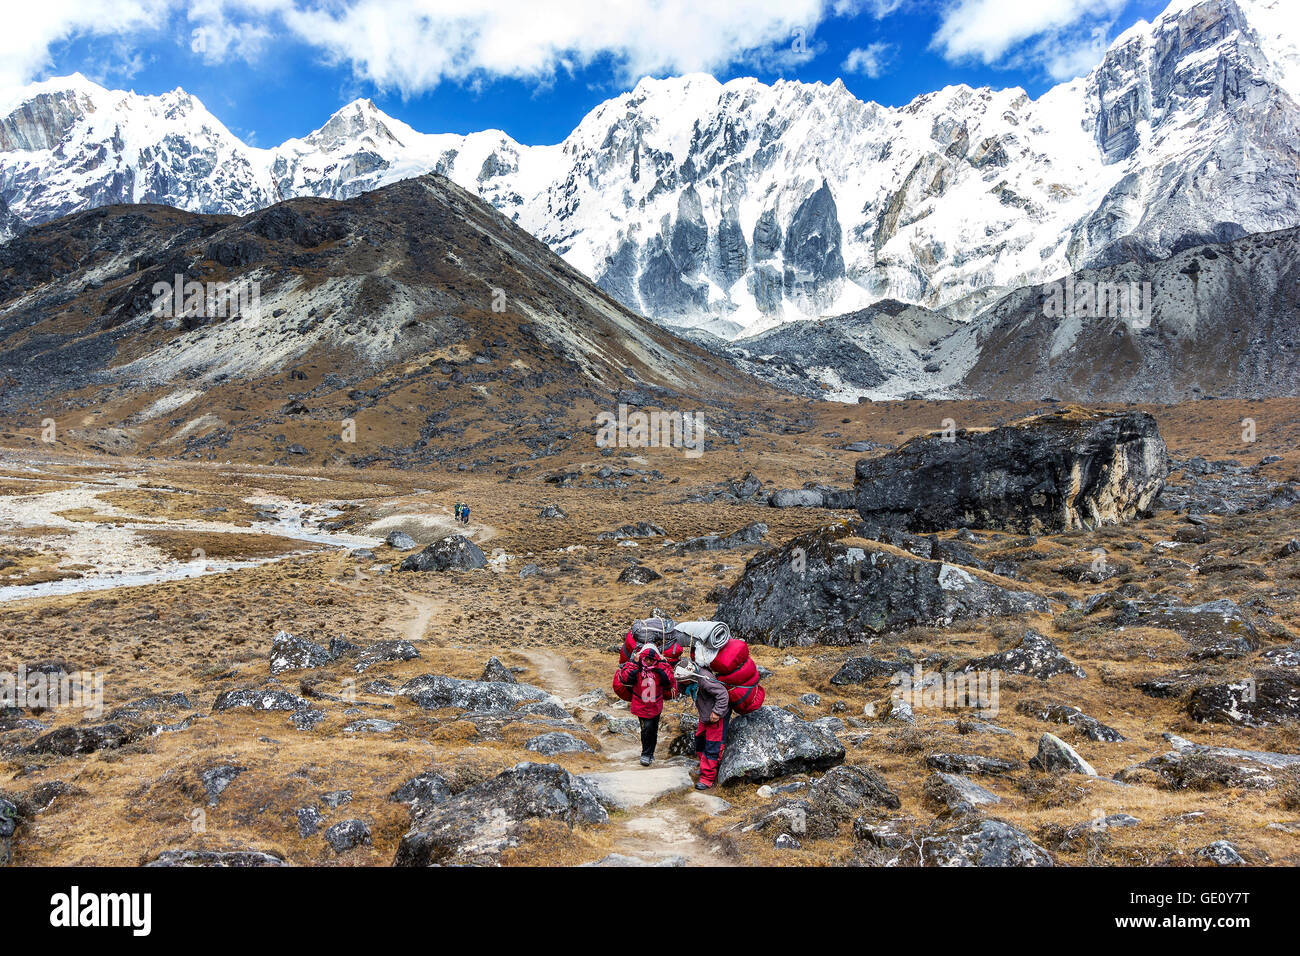 Porteurs de charge lourde après avoir traversé Cho La Pass dans les Himalaya, situé à 5 420 mètres (17 782 pieds) au-dessus du niveau de la mer dans la région de Solukhumbu. Banque D'Images